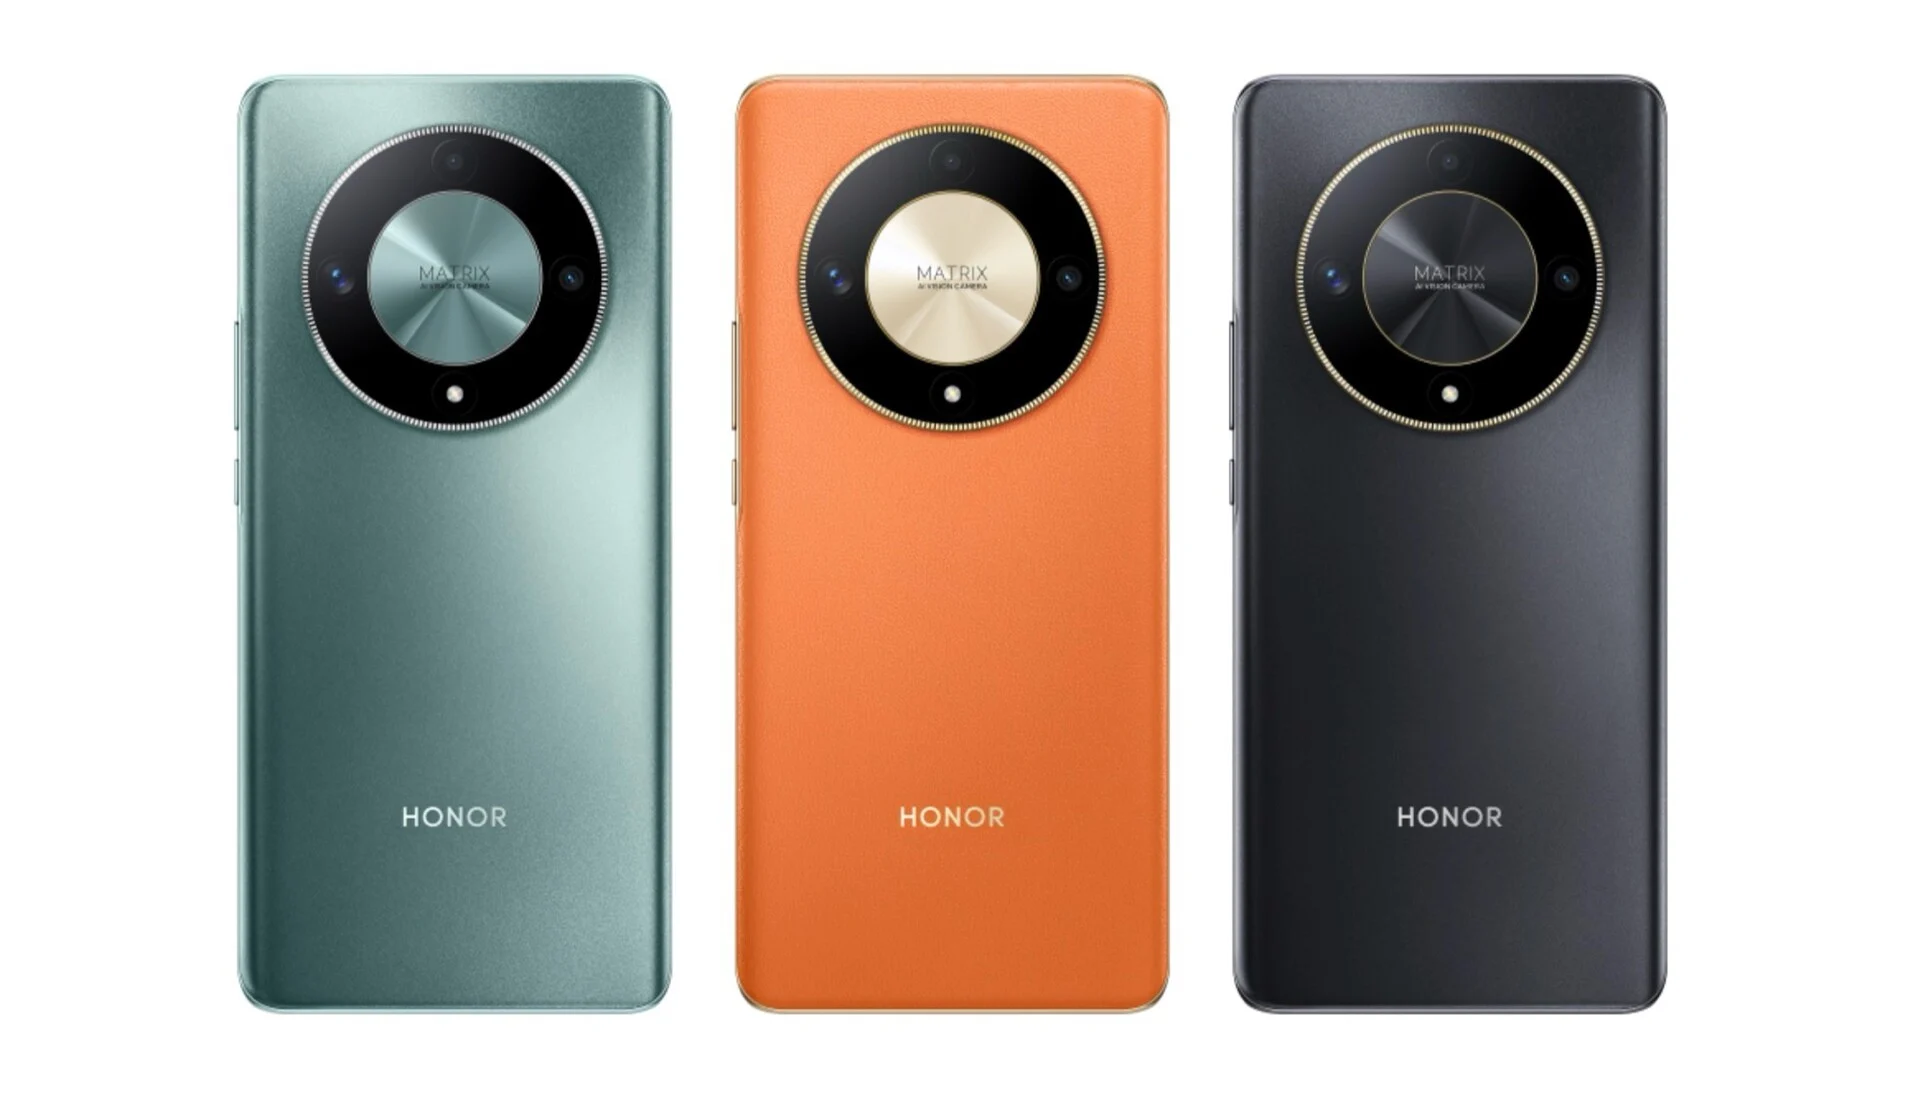 Blink  Video Doorbell Sonnette caméra compatible Alexa noir - Neuf  new